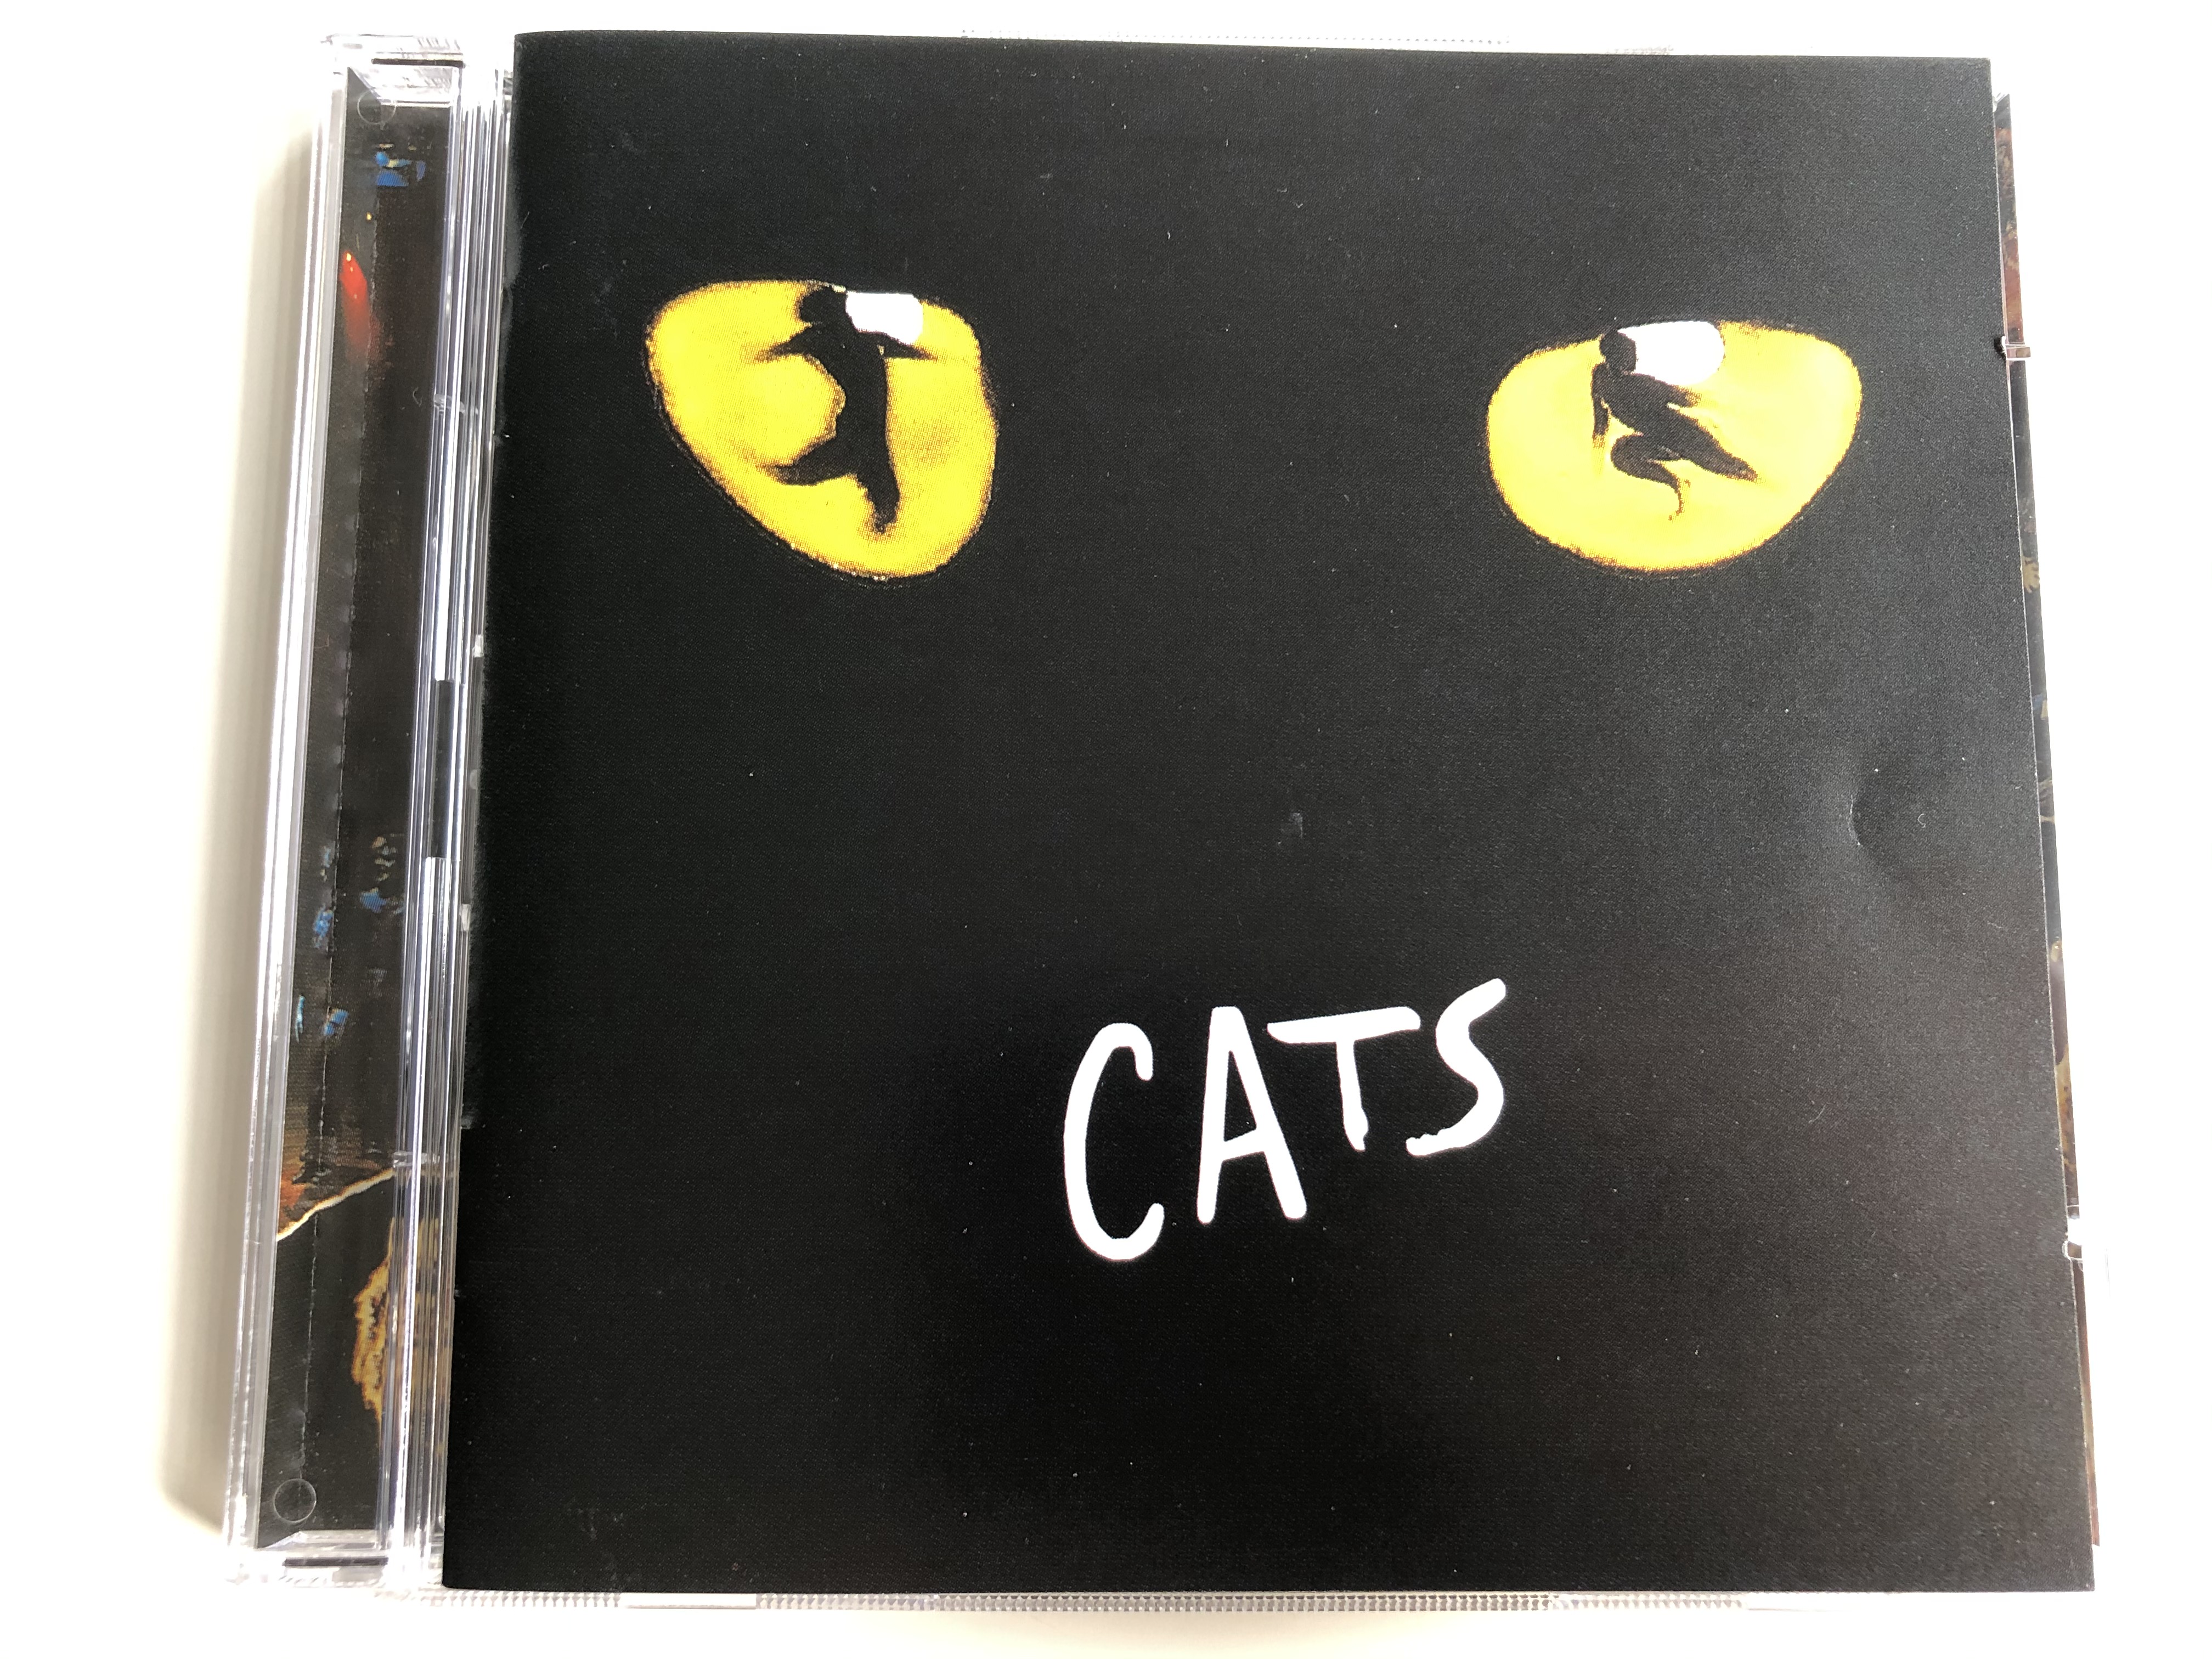 cats-andrew-lloyd-webber-polydor-2x-audio-cd-1998-817-061-2-1-.jpg